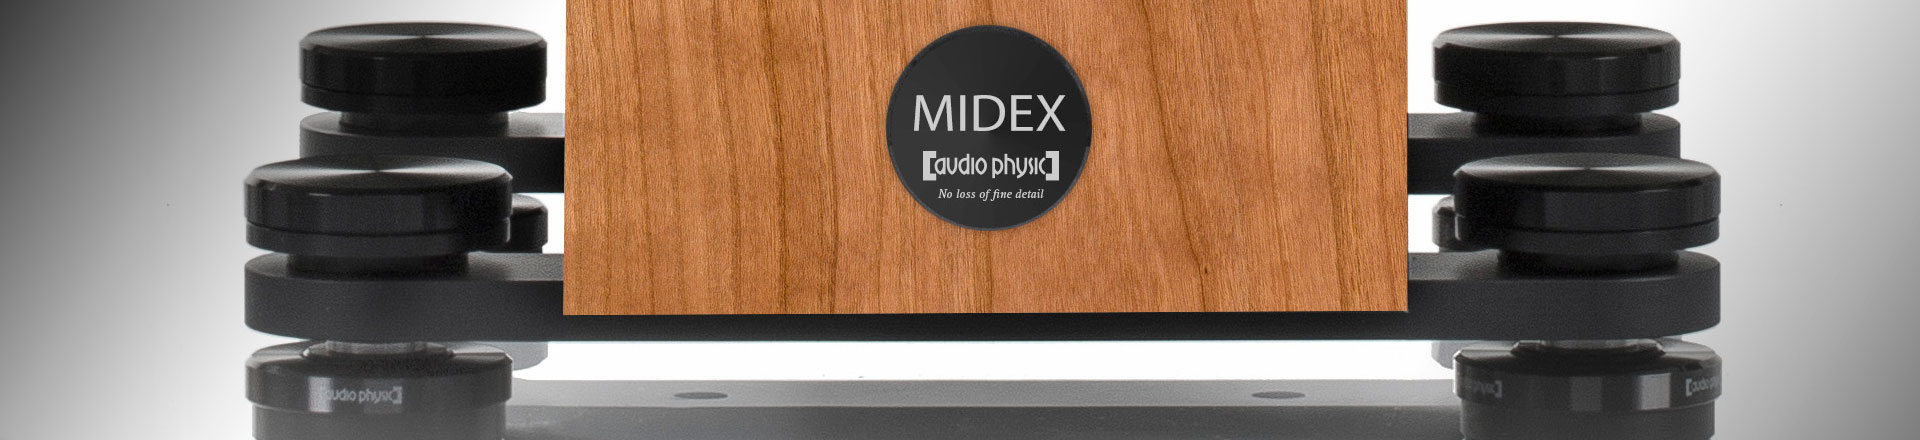 AUDIO PHYSIC: MIDEX - wydajność i elegancja w doskonałej harmonii